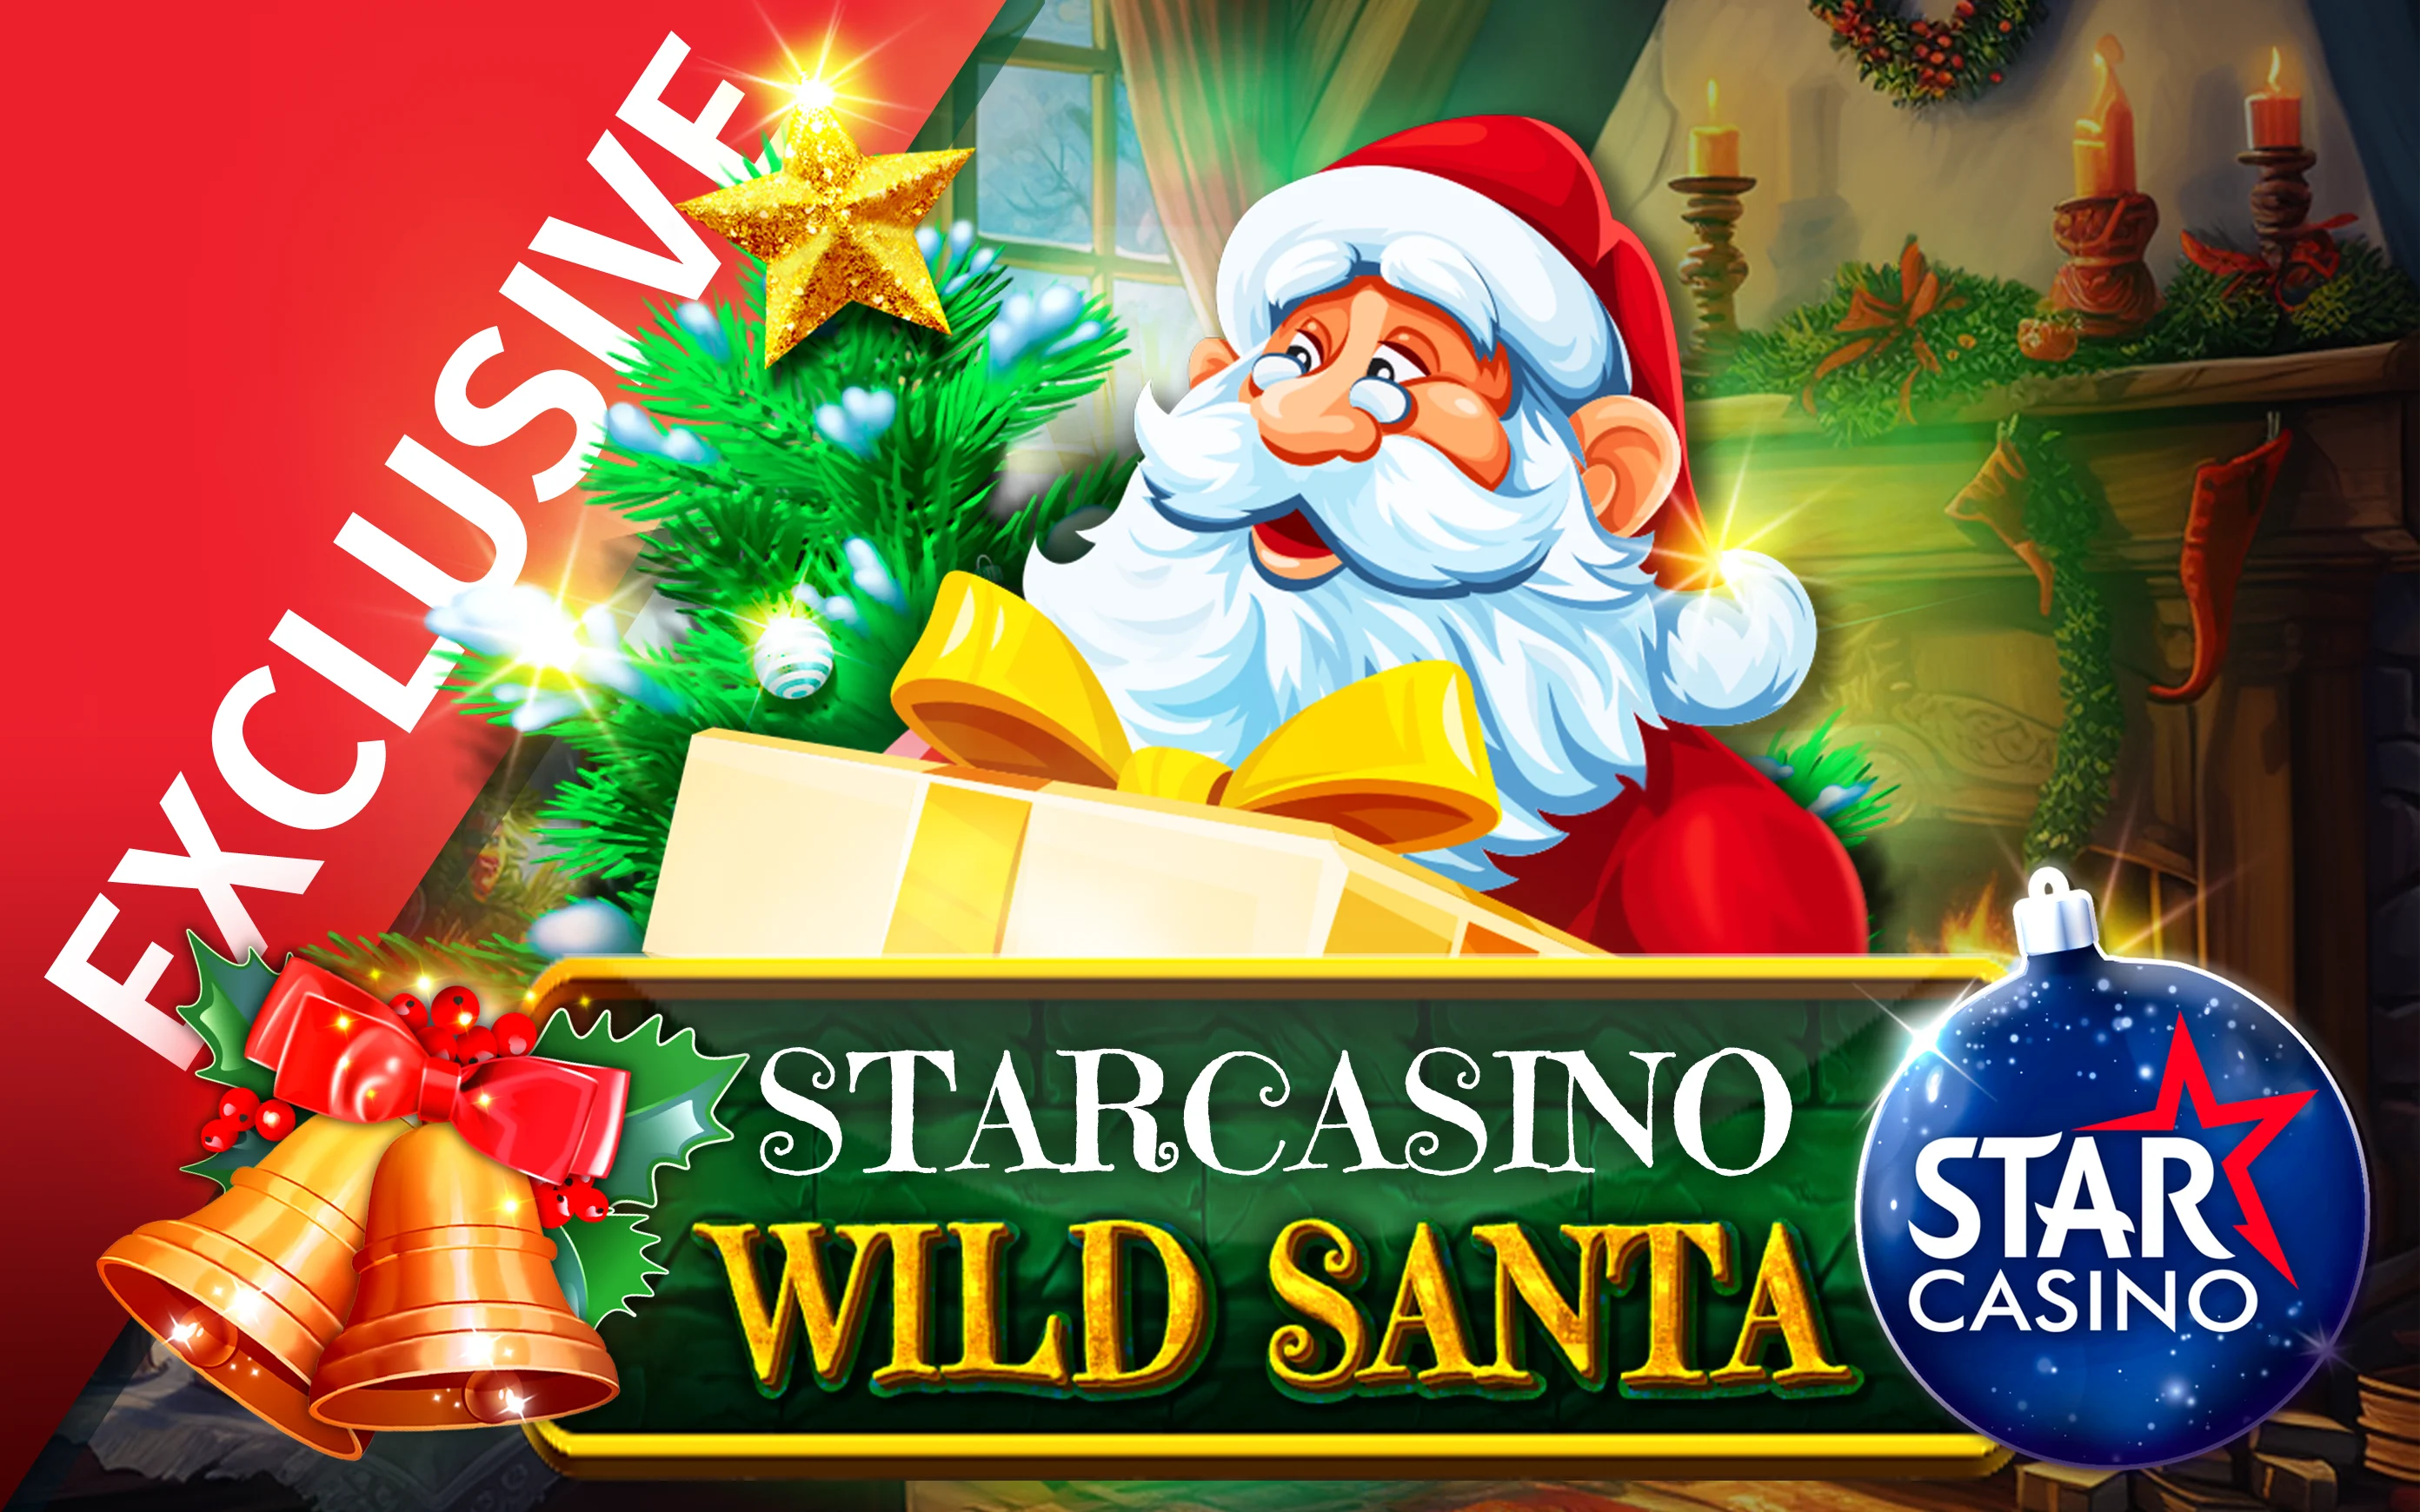 Play Starcasino Wild Santa 2 on Starcasino.be online casino